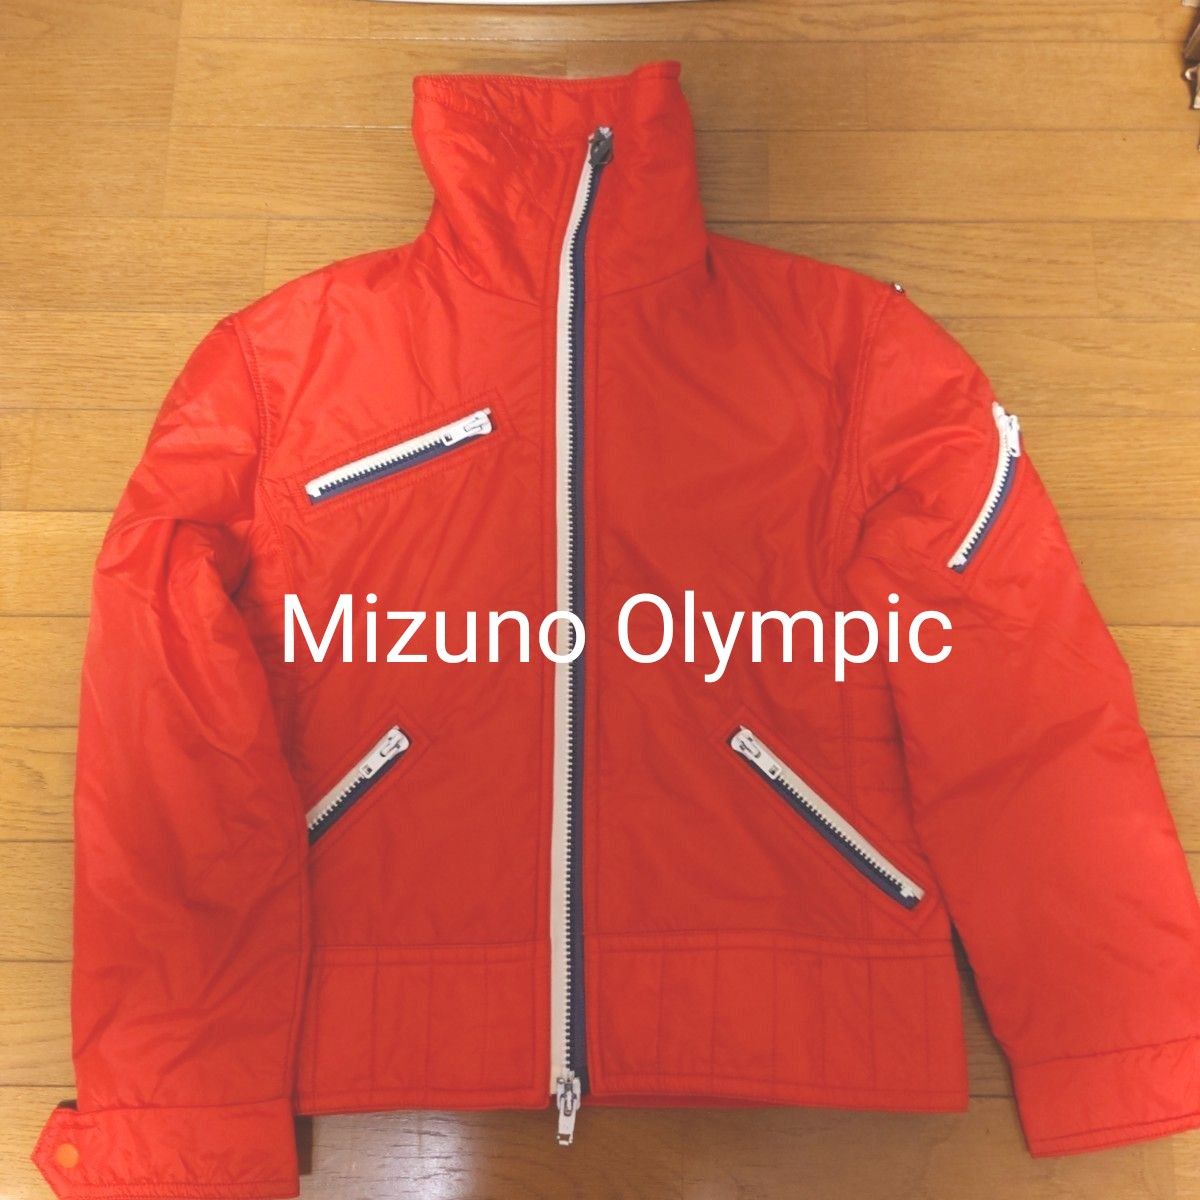 【古着】Mizuno Olympic スキーウエア